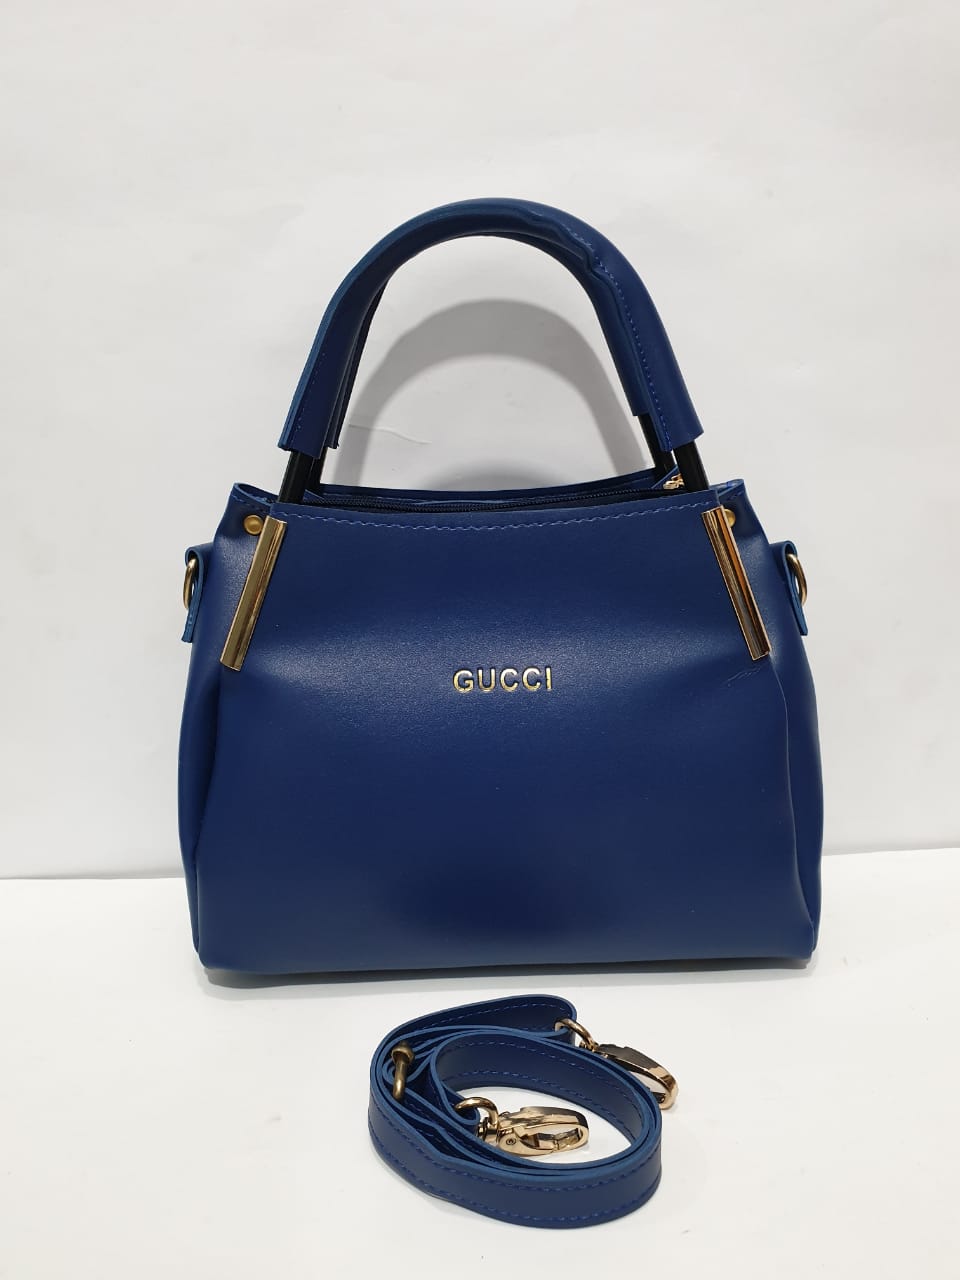 EMLOVEX Ladies handbags – SKY BLUE 2